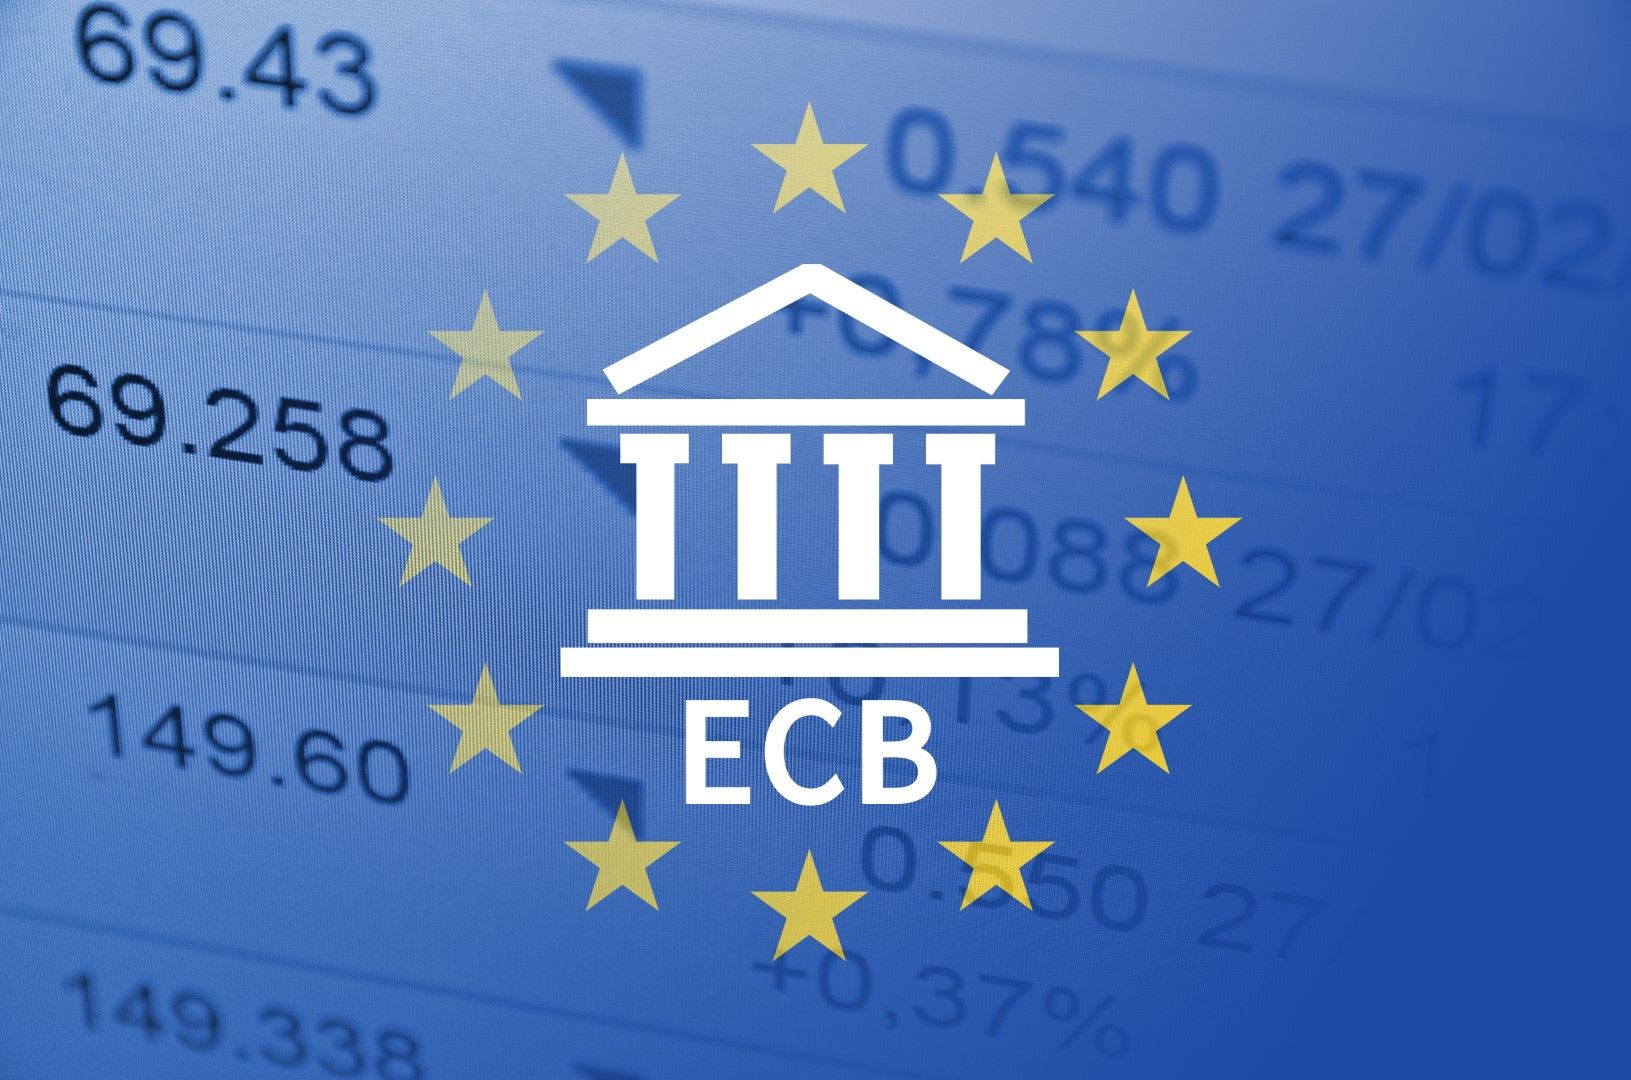 Професионалните анализатори, до които се допитва ЕЦБ, намалиха прогнозите си за икономическия растеж